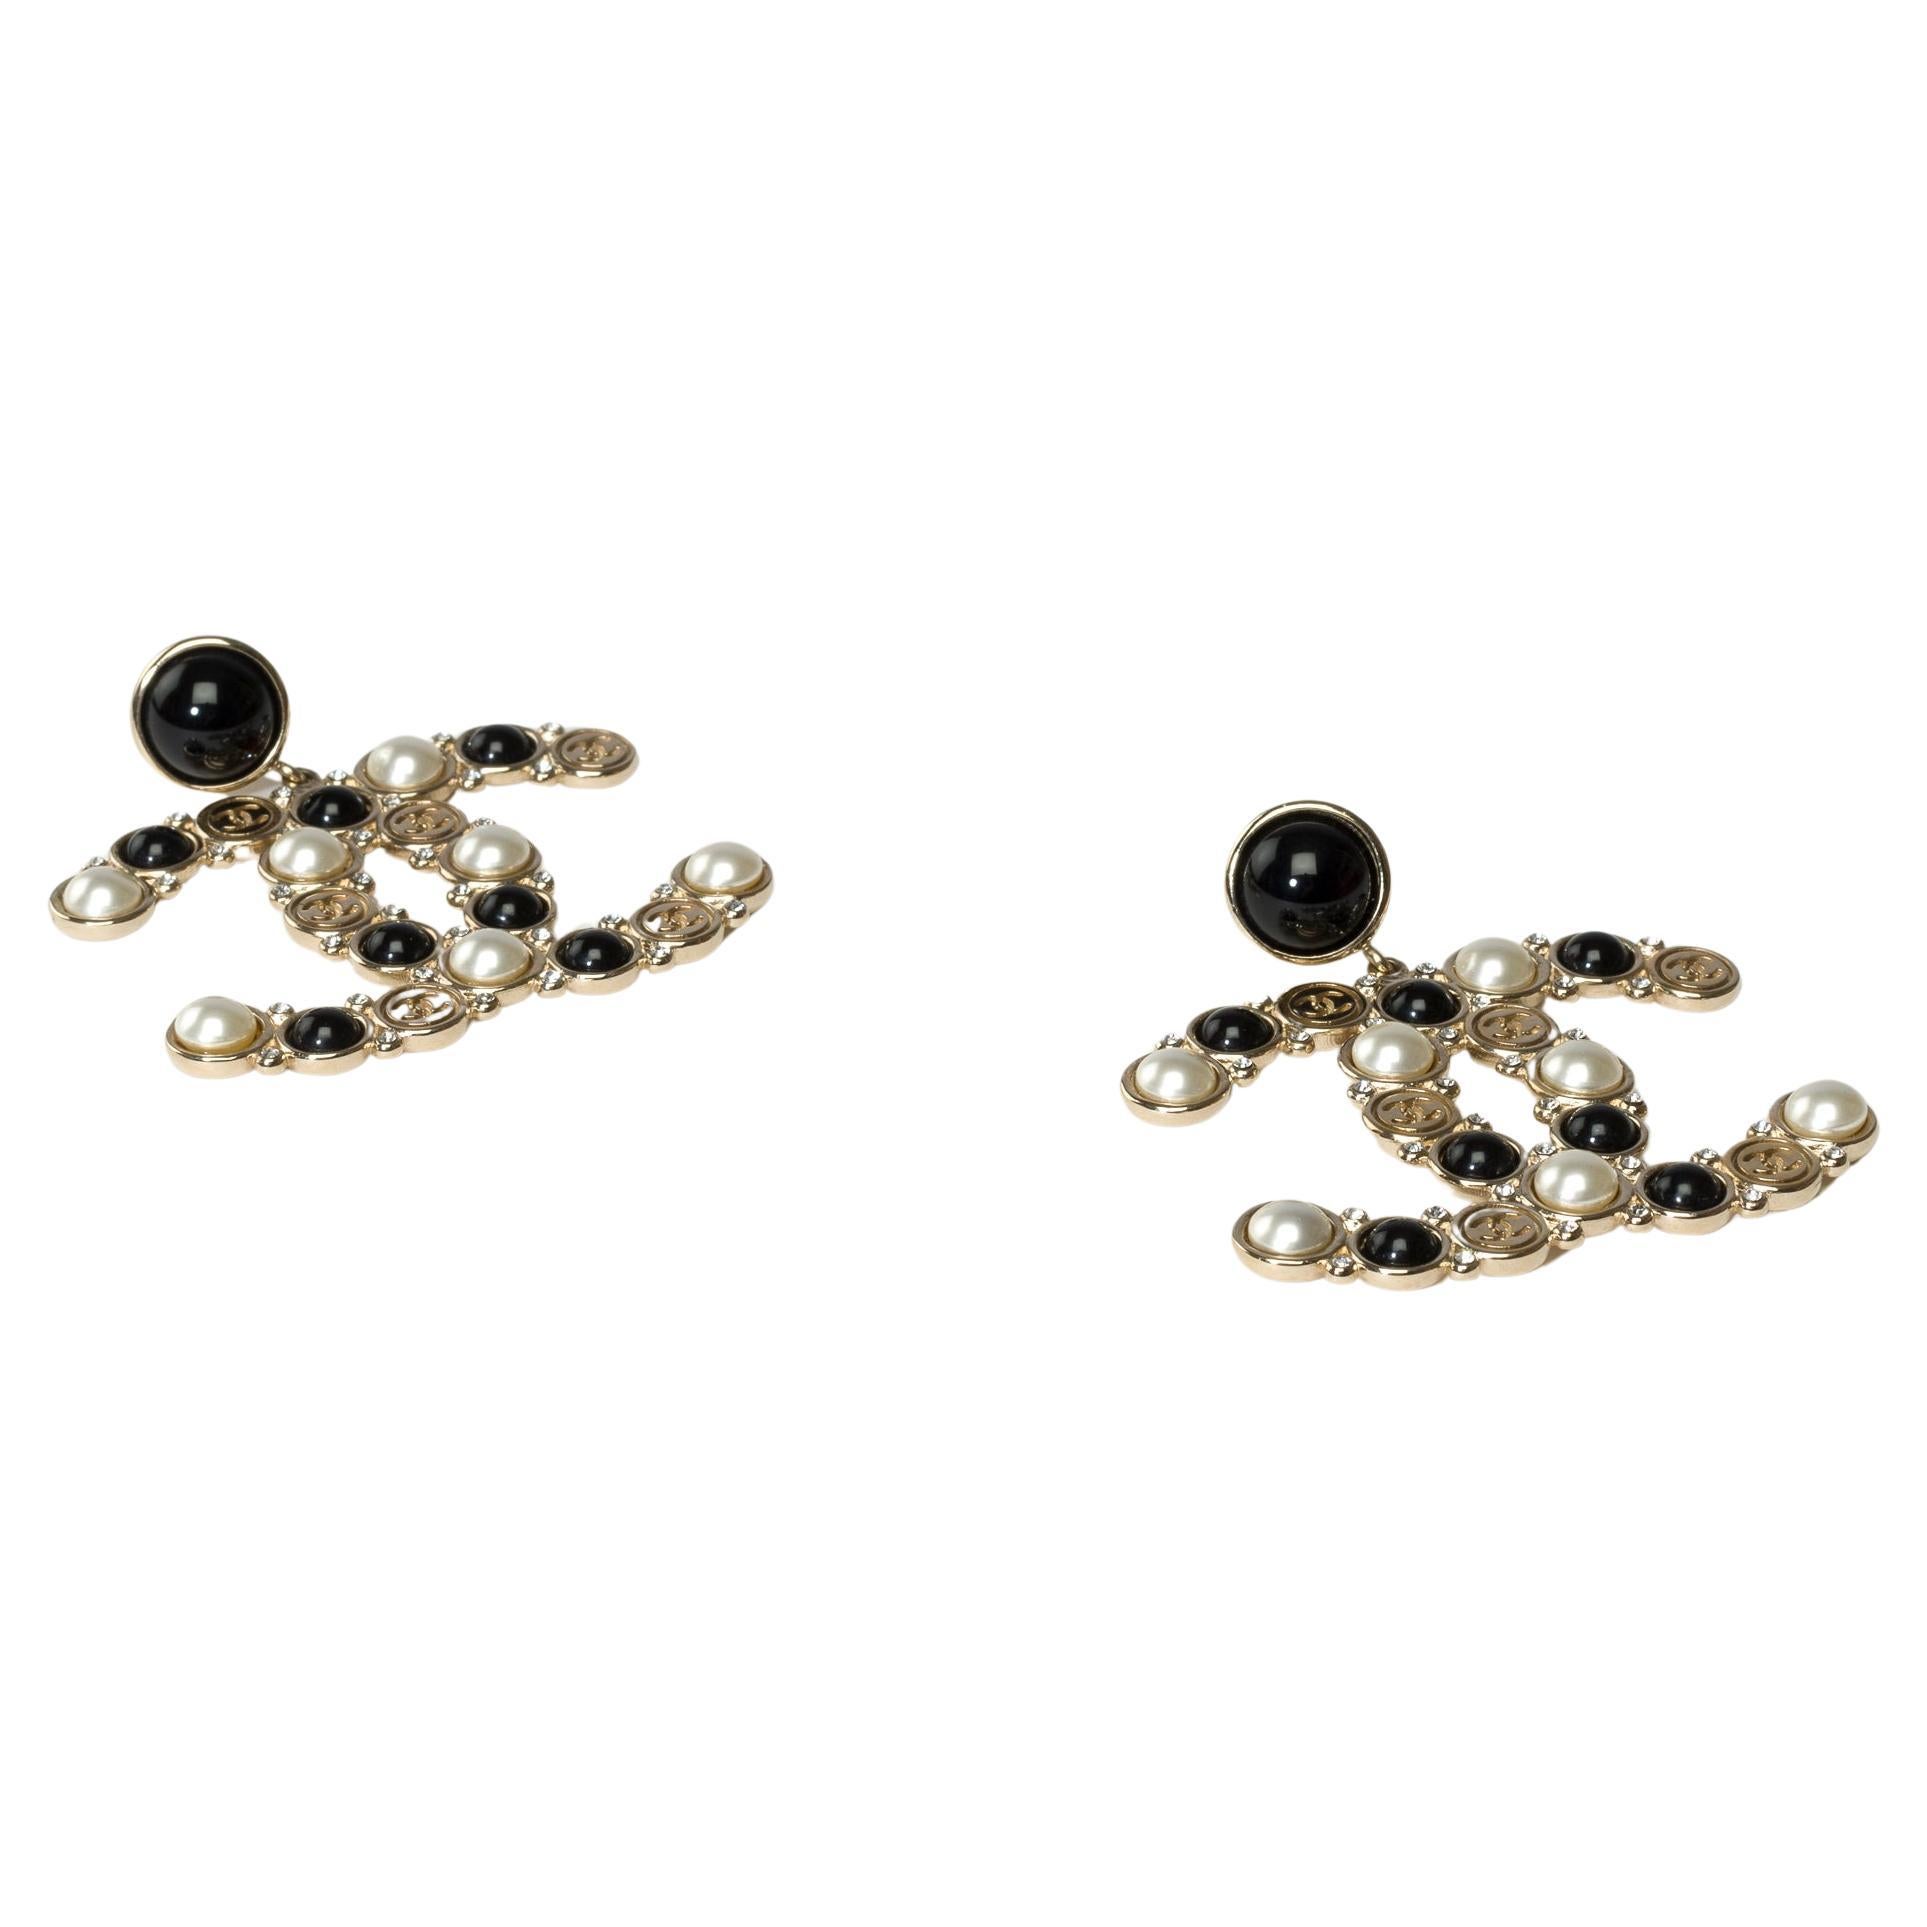 Superbes boucles d'oreilles Chanel CC en métal argenté surmontées de fausses perles, de strass et de résine.

Marque : Chanel
Tags : Boucles d'oreilles pour hommes 
Matière : Métal argenté, fausses perles, strass et résine
Dimensions : 5x4 cm (2x1,6